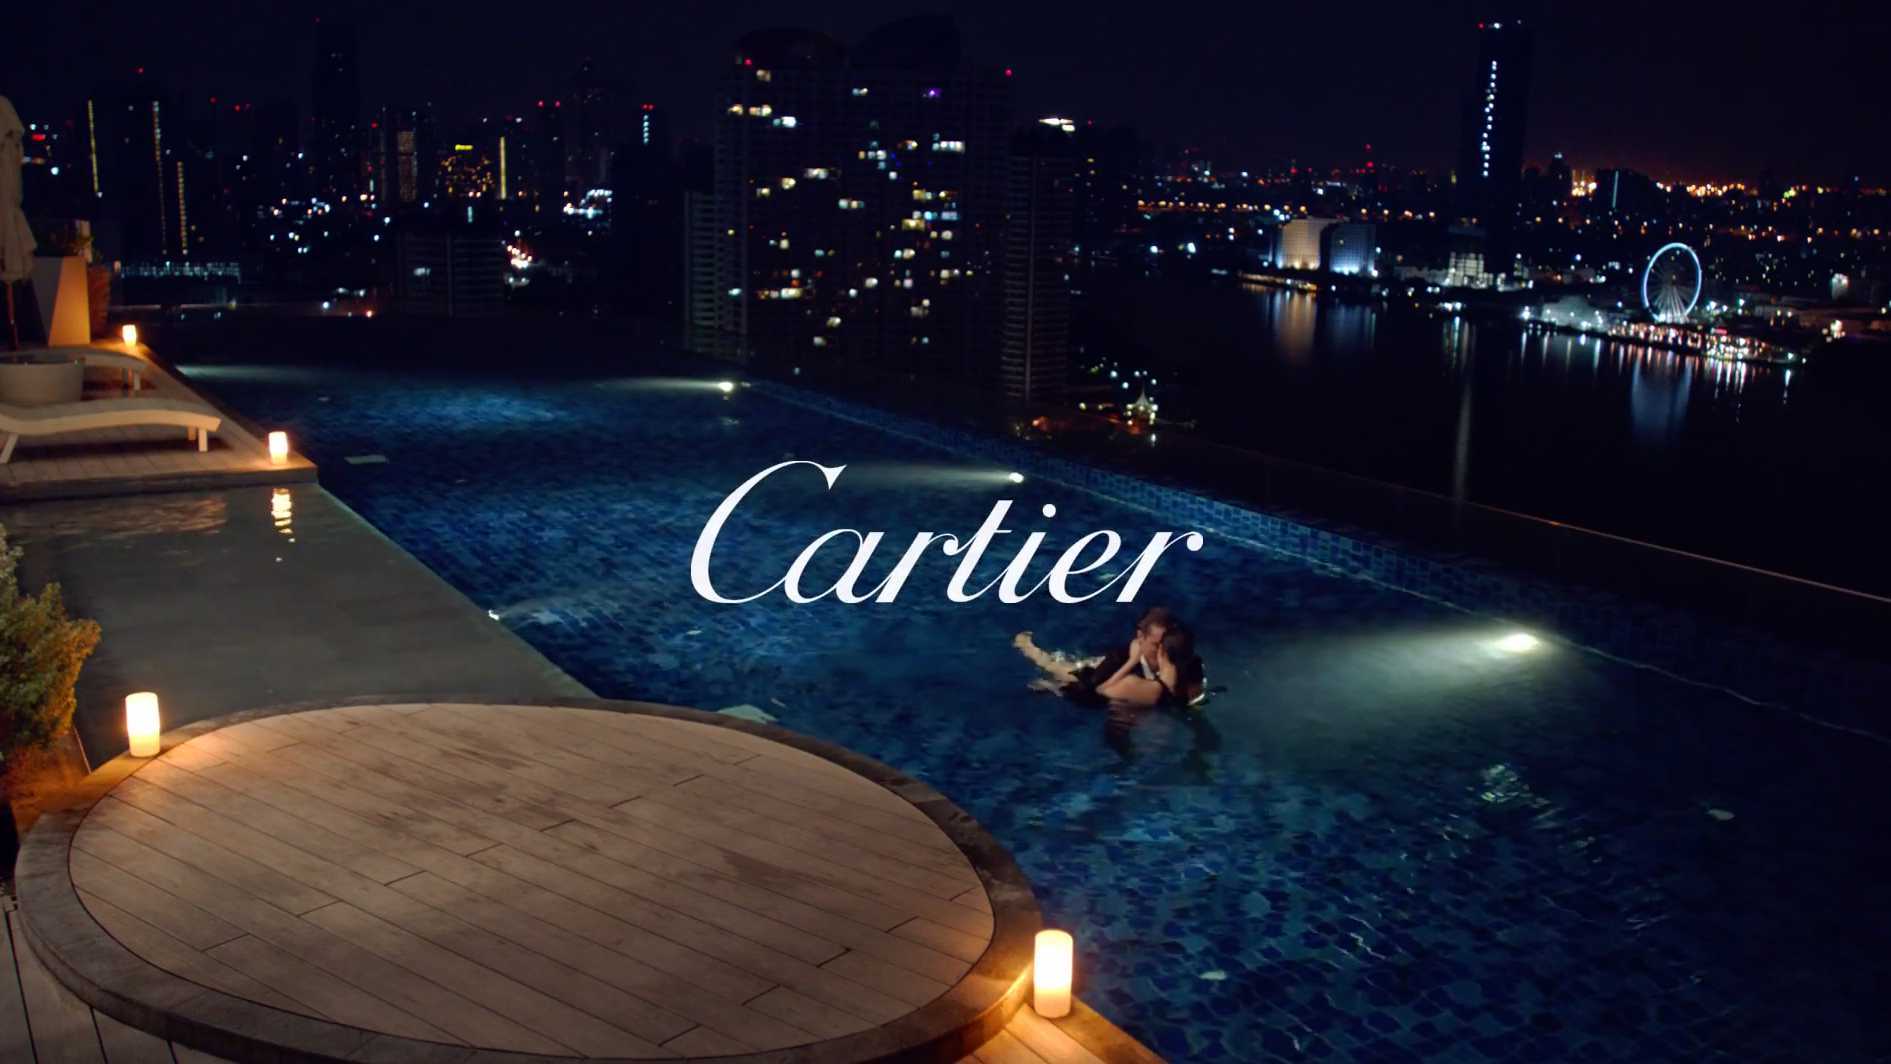 卡地亚 Cartier The Proposal - Jump Right In